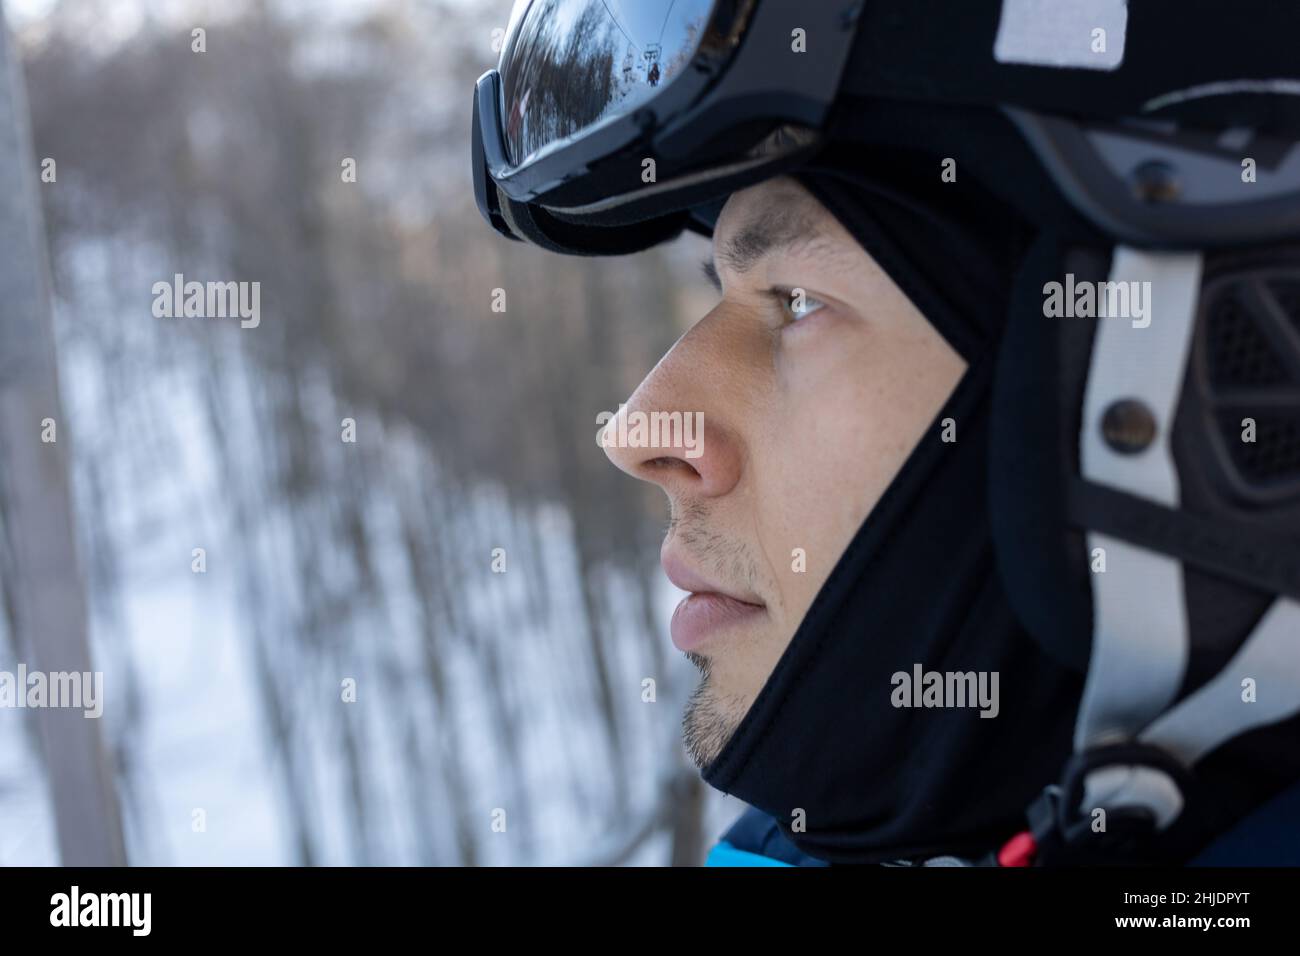 Skisportrait am Sessellift in Helm und Maske. Hochwertige Fotos Stockfoto